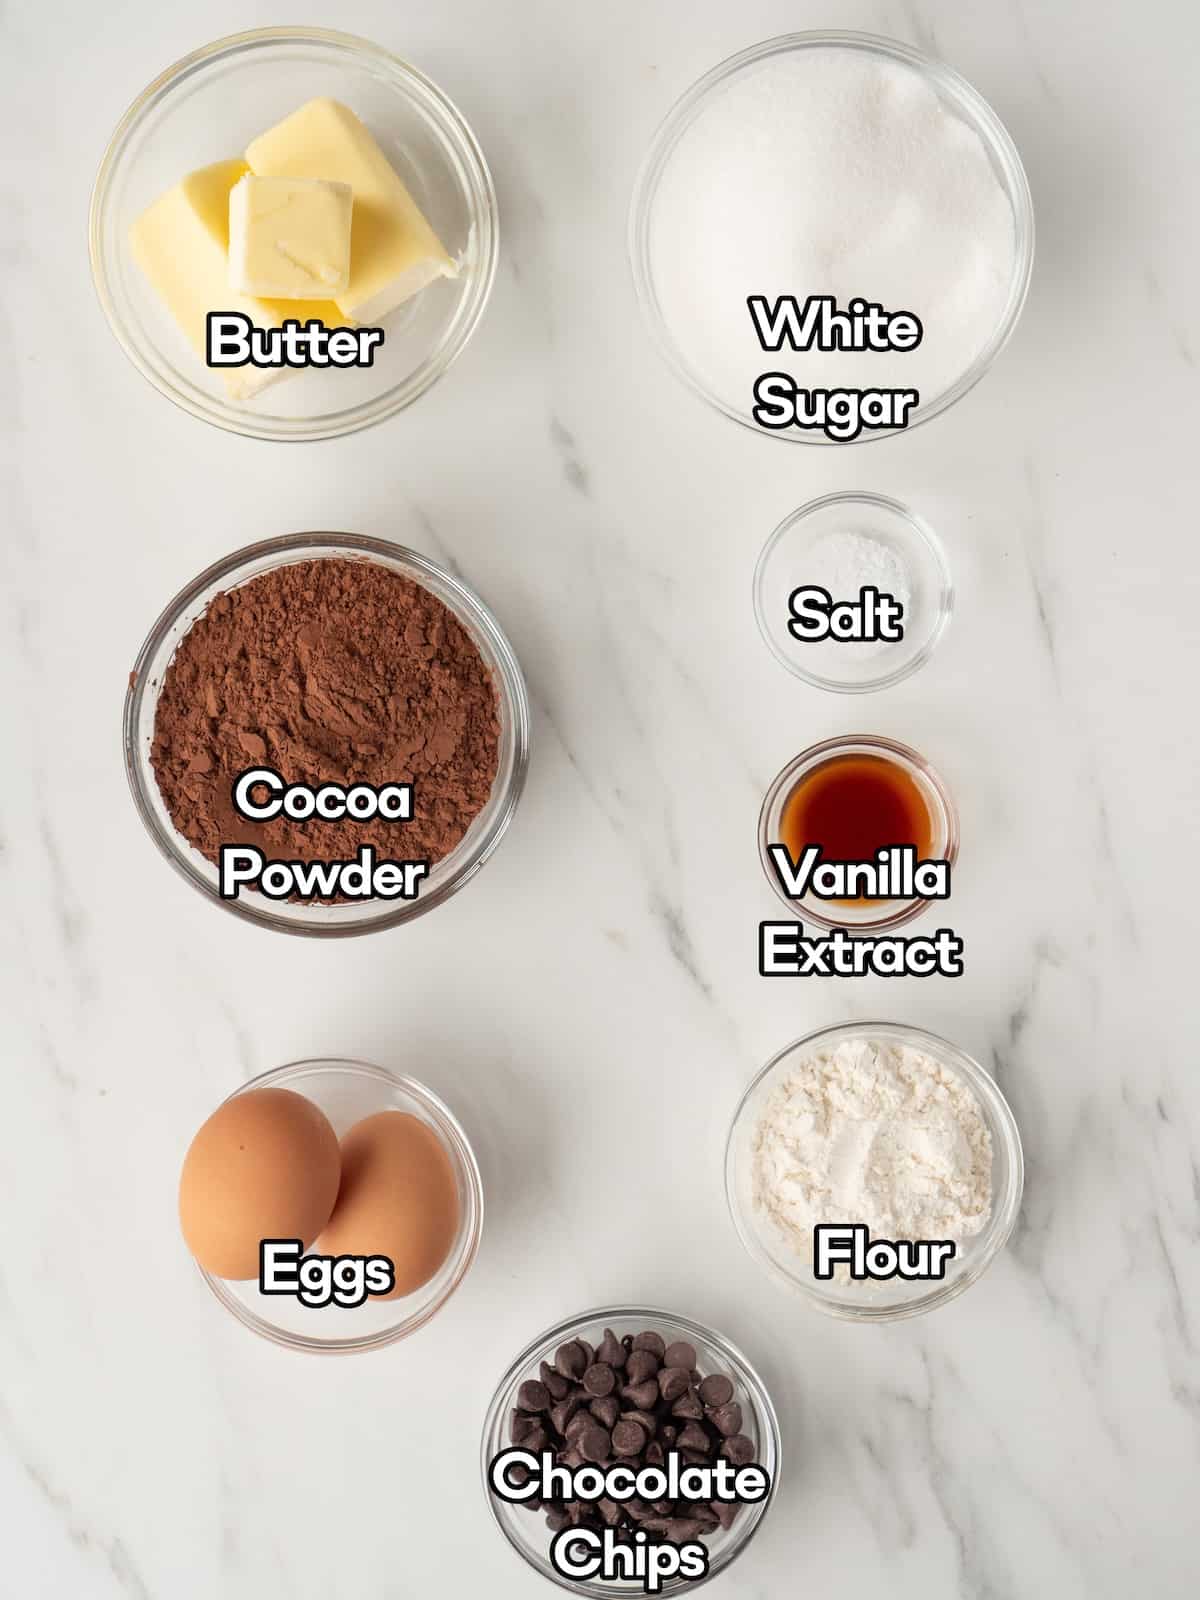 Mise-en-place of all ingredients to make crinkle top brownie bites.